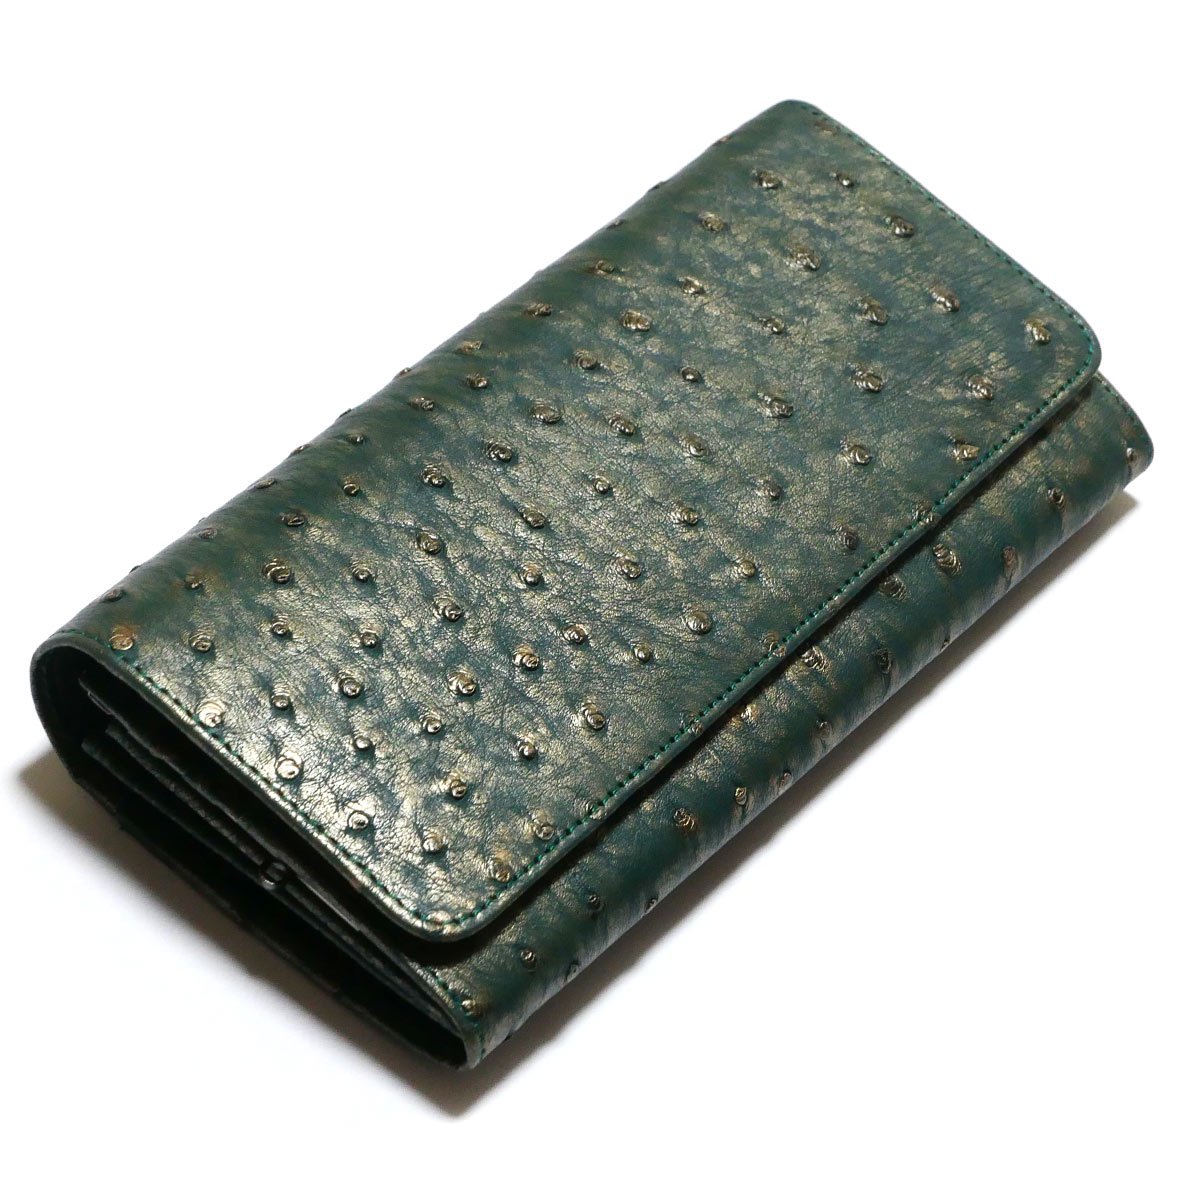 がま口 長財布 かぶせ型 がま口財布 ガマ口 財布 本革 駝鳥革 オーストリッチ革 ラグジュアリー グリーン